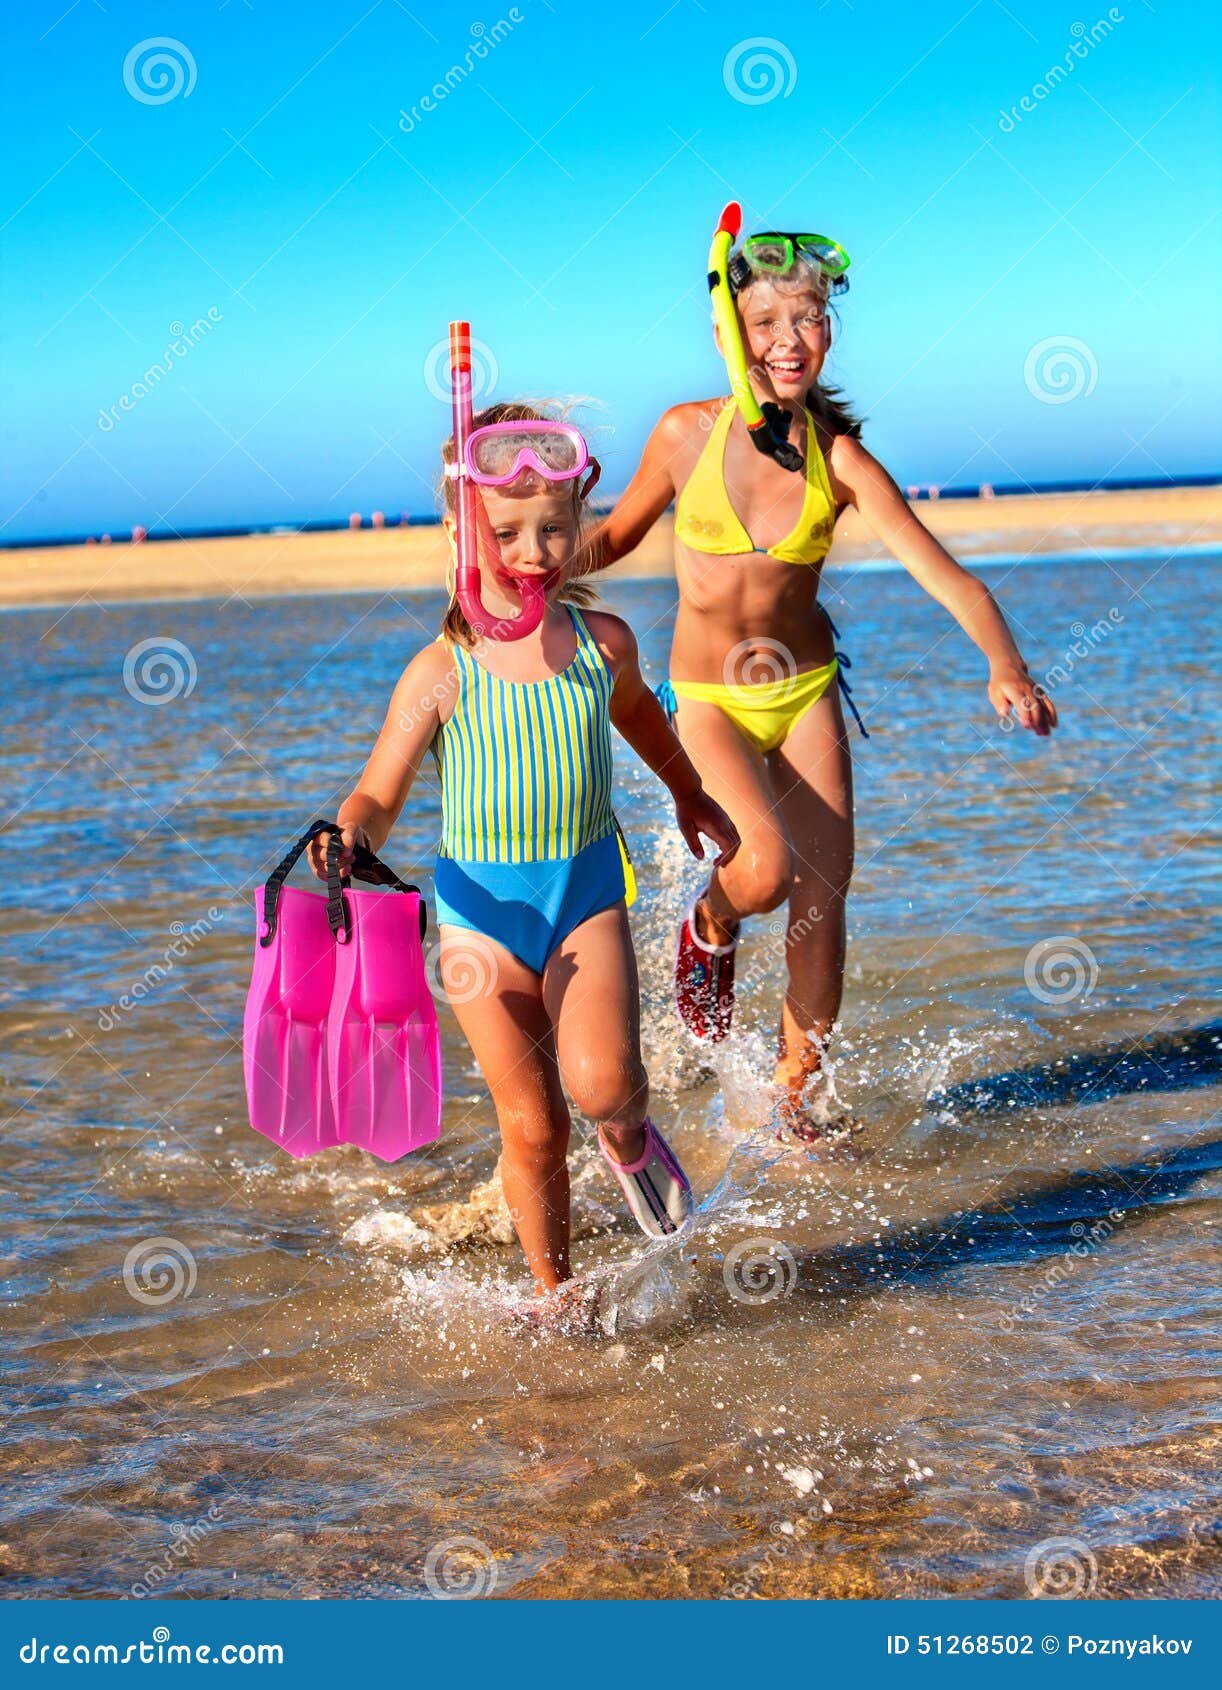 за голыми детьми на пляже фото 61